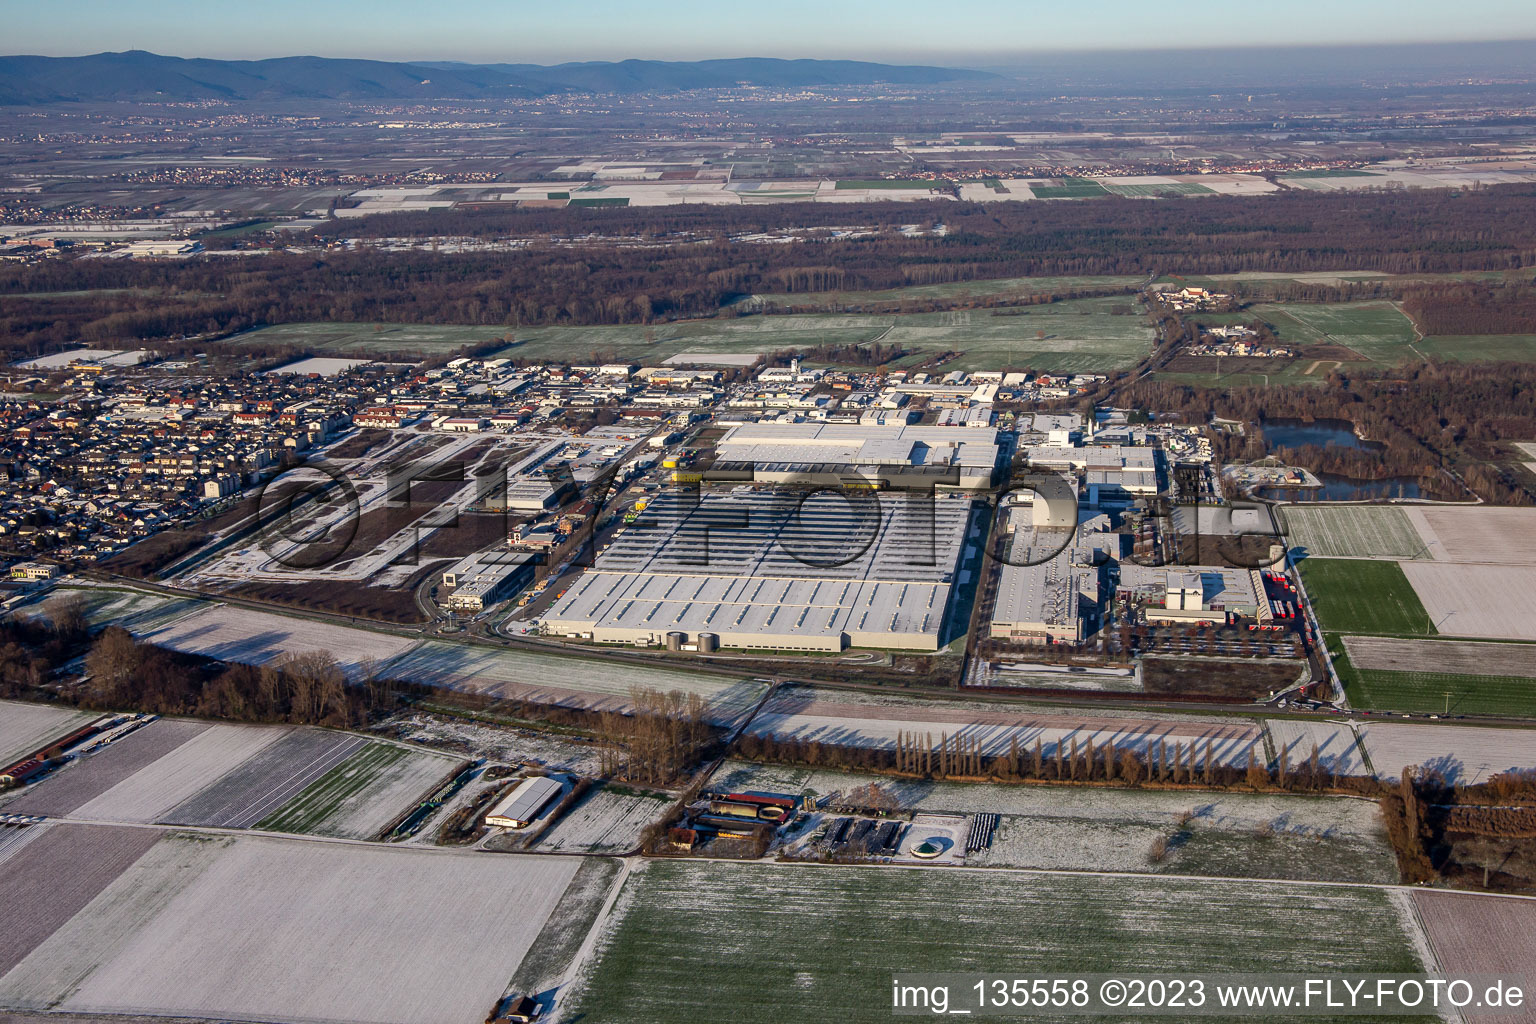 Vue aérienne de Zone industrielle d'Interpark en hiver avec de la neige à Offenbach an der Queich dans le département Rhénanie-Palatinat, Allemagne